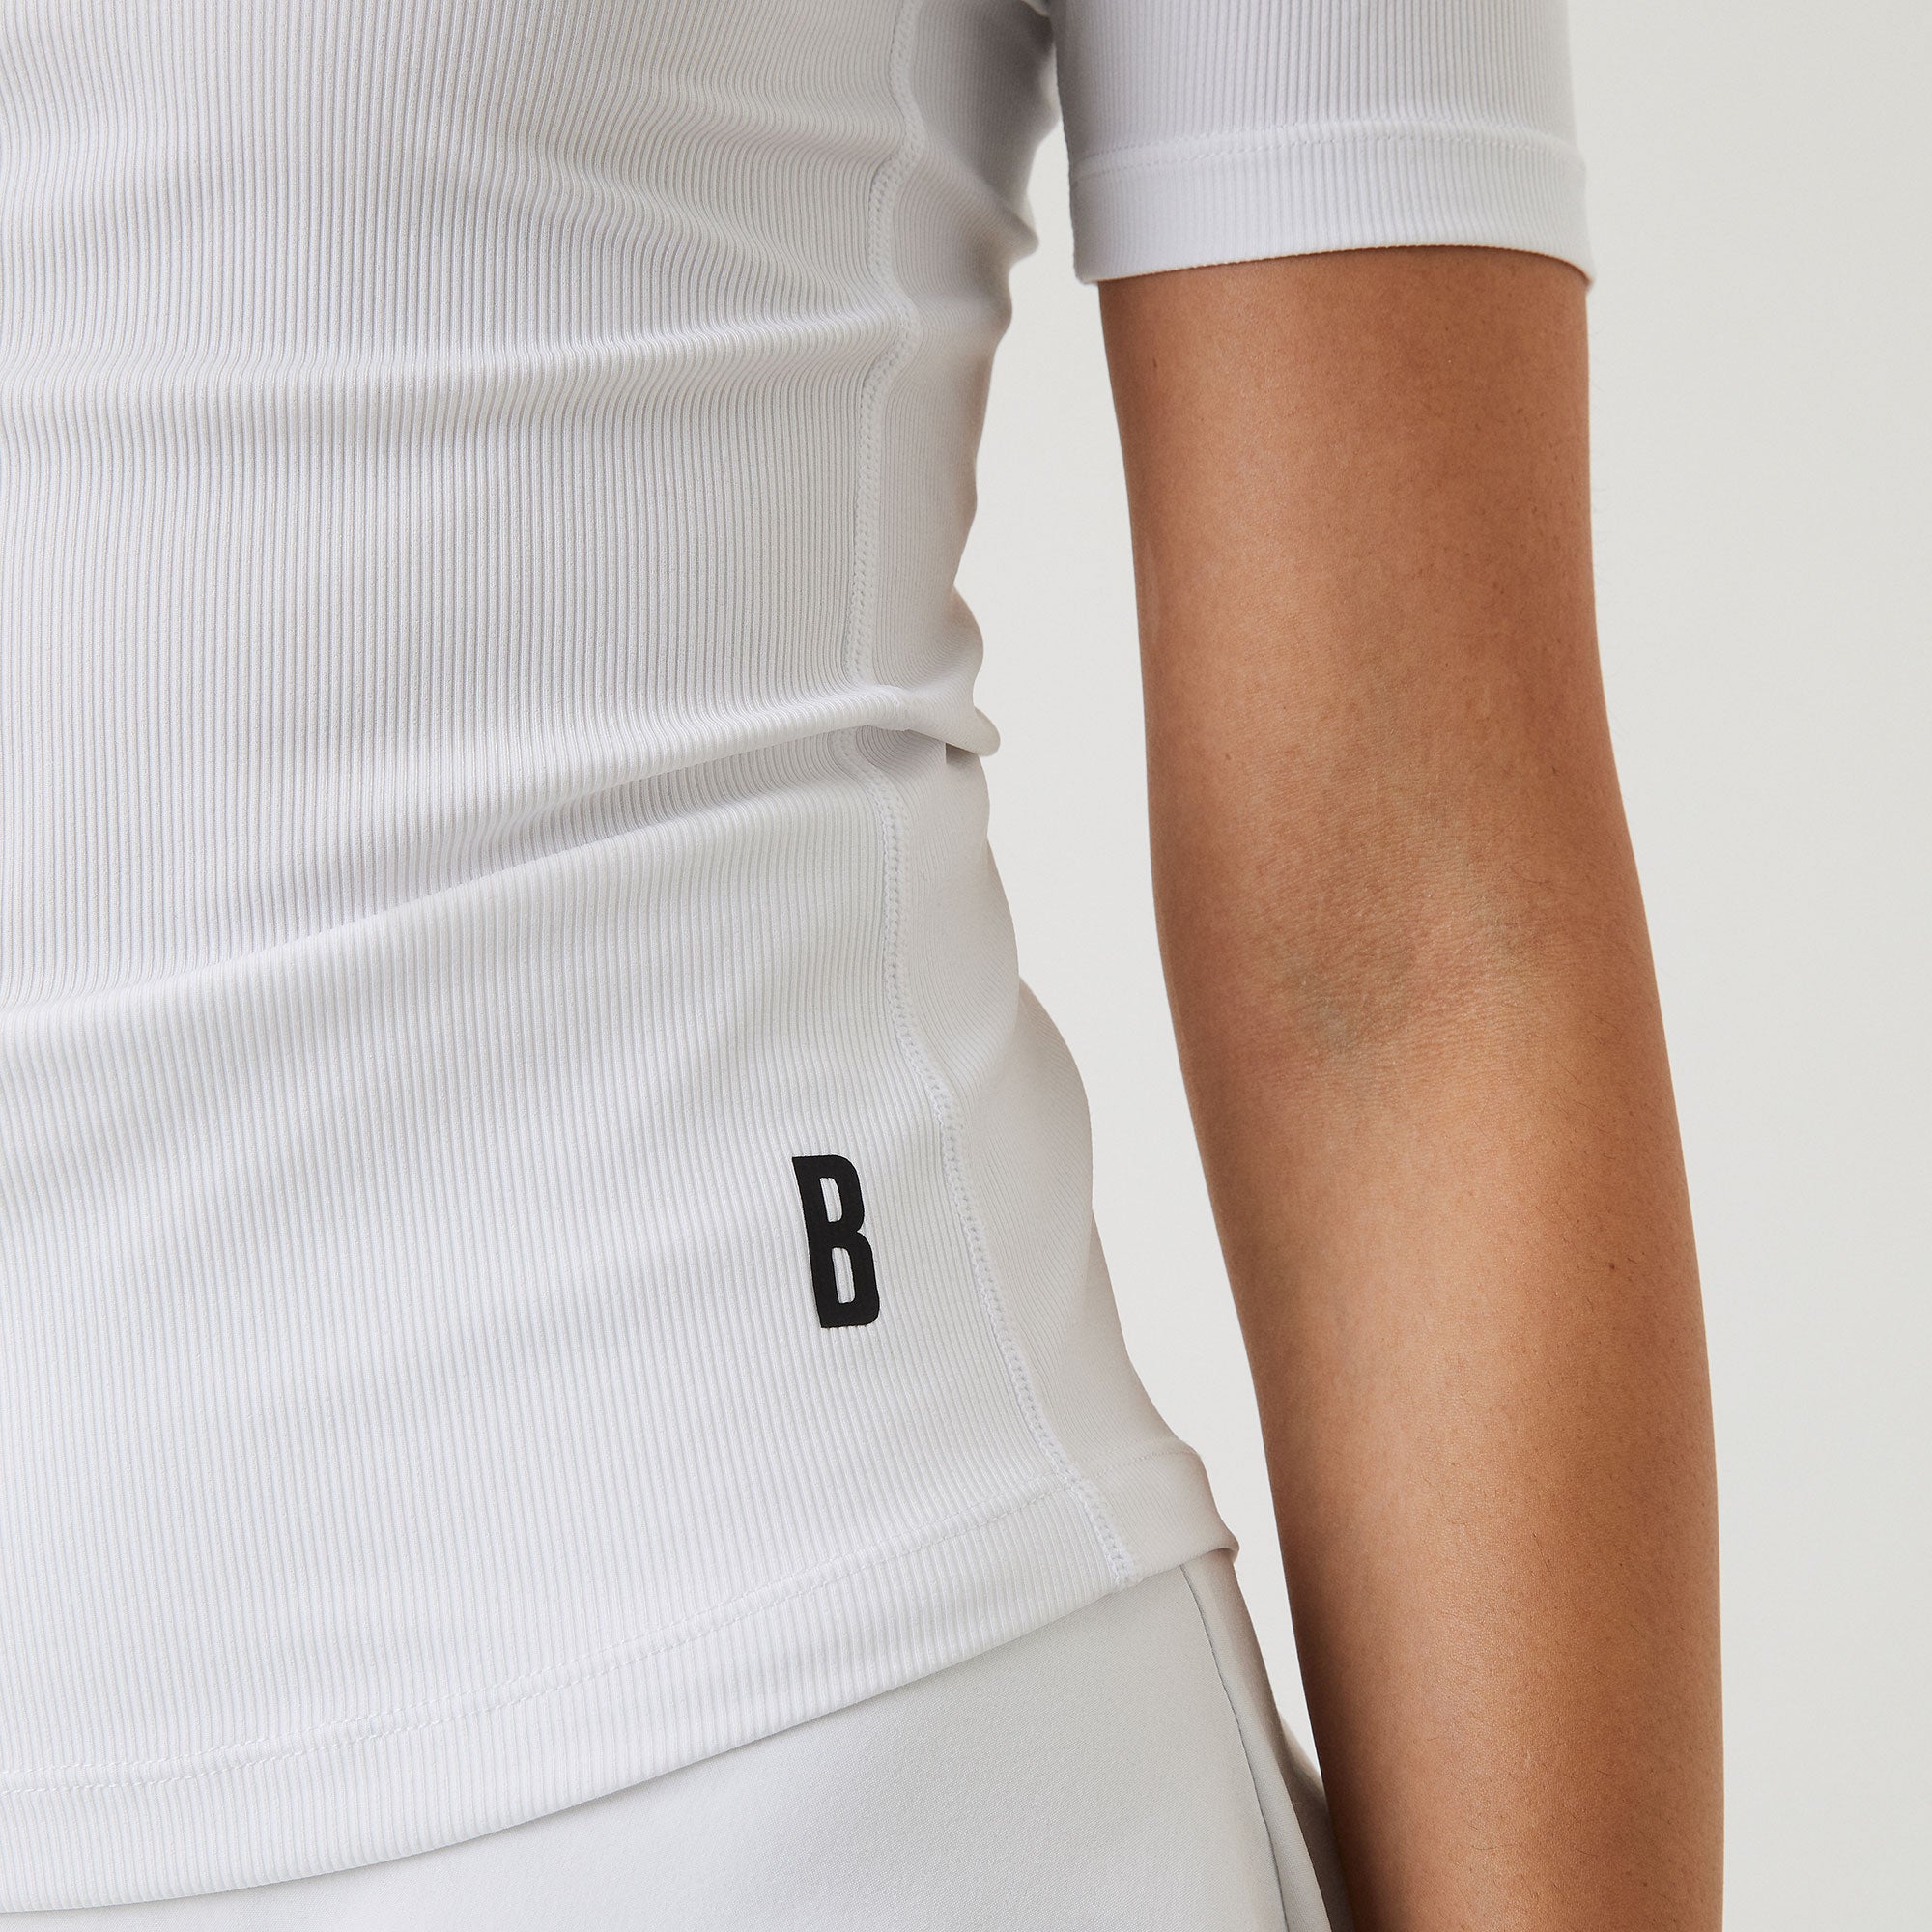 Björn Borg Ace Women's Rib Tennis Shirt White (4)